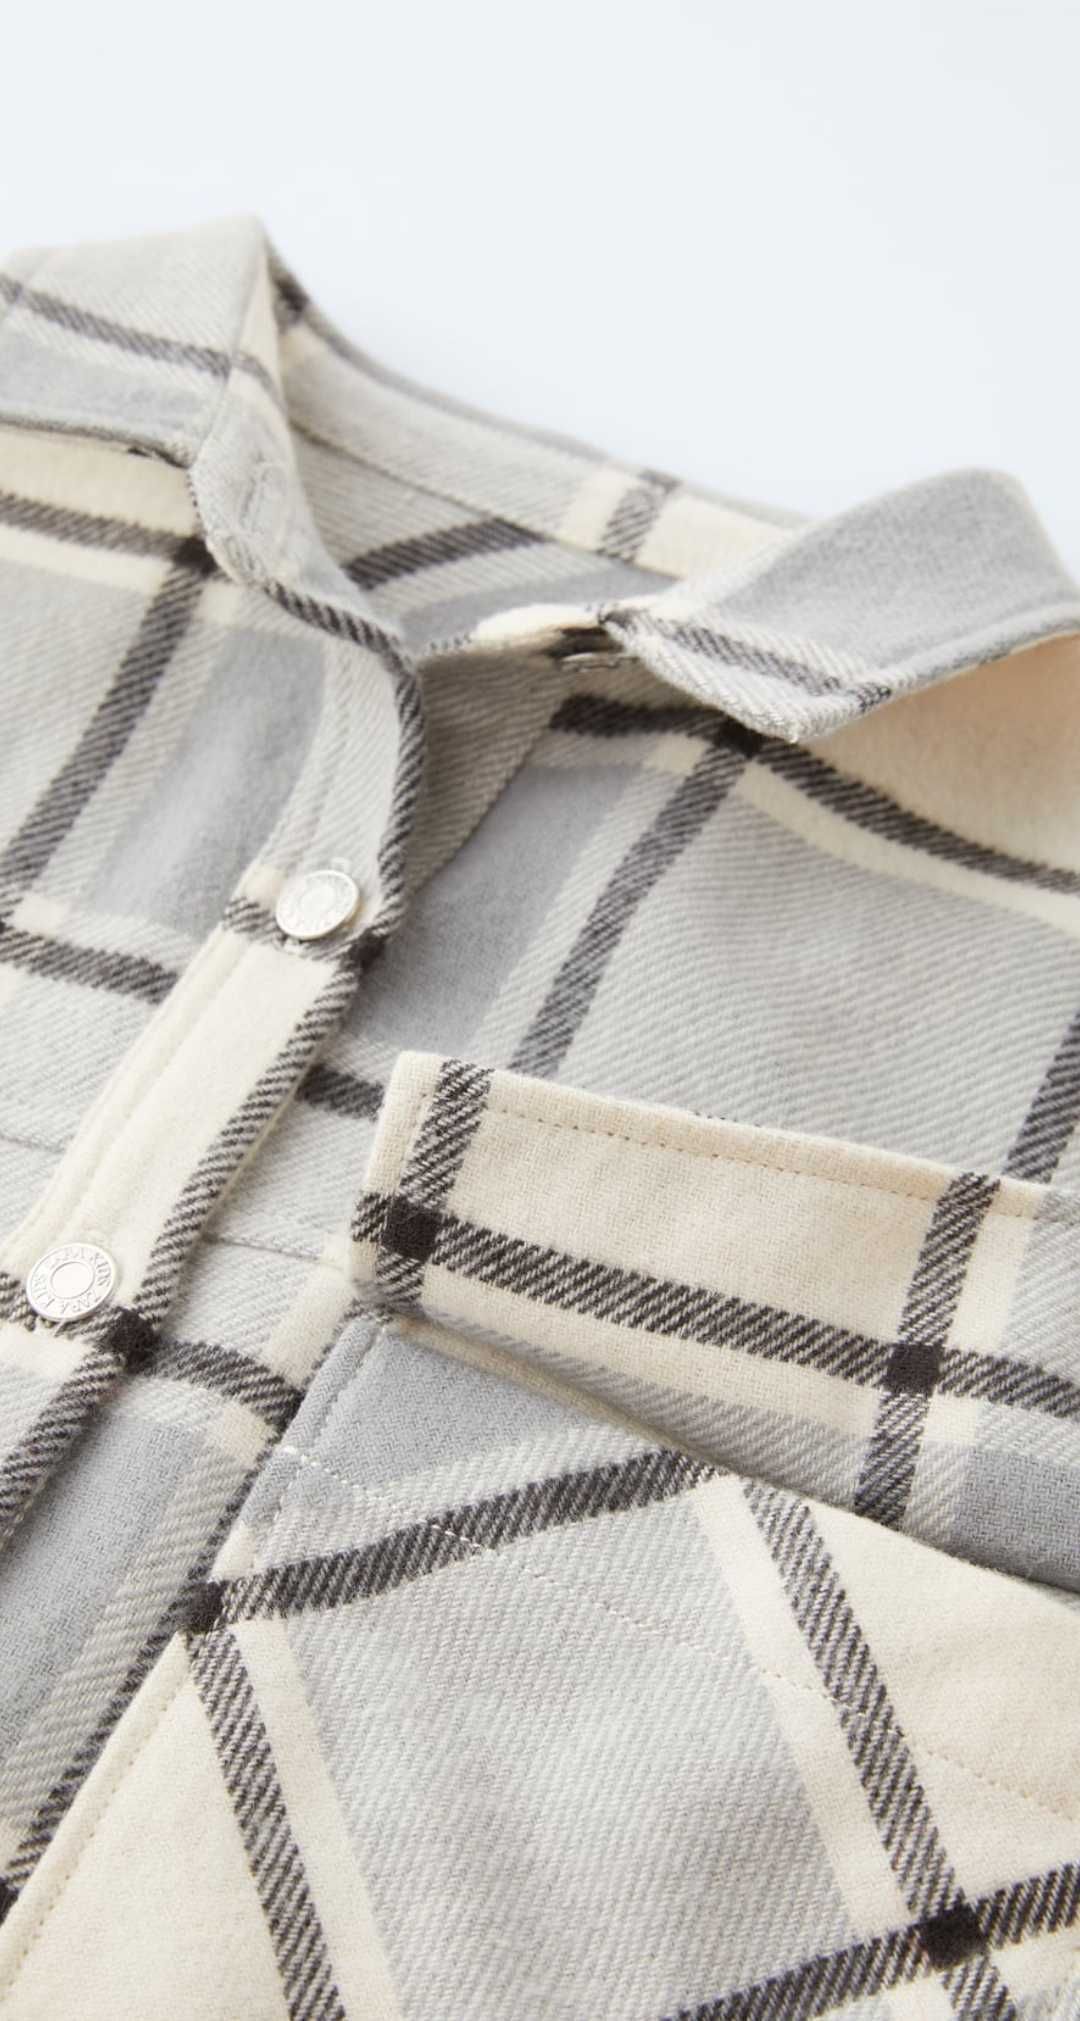 Рубашка Zara 9-10 років/140-146 см сорочка в клітинку байка